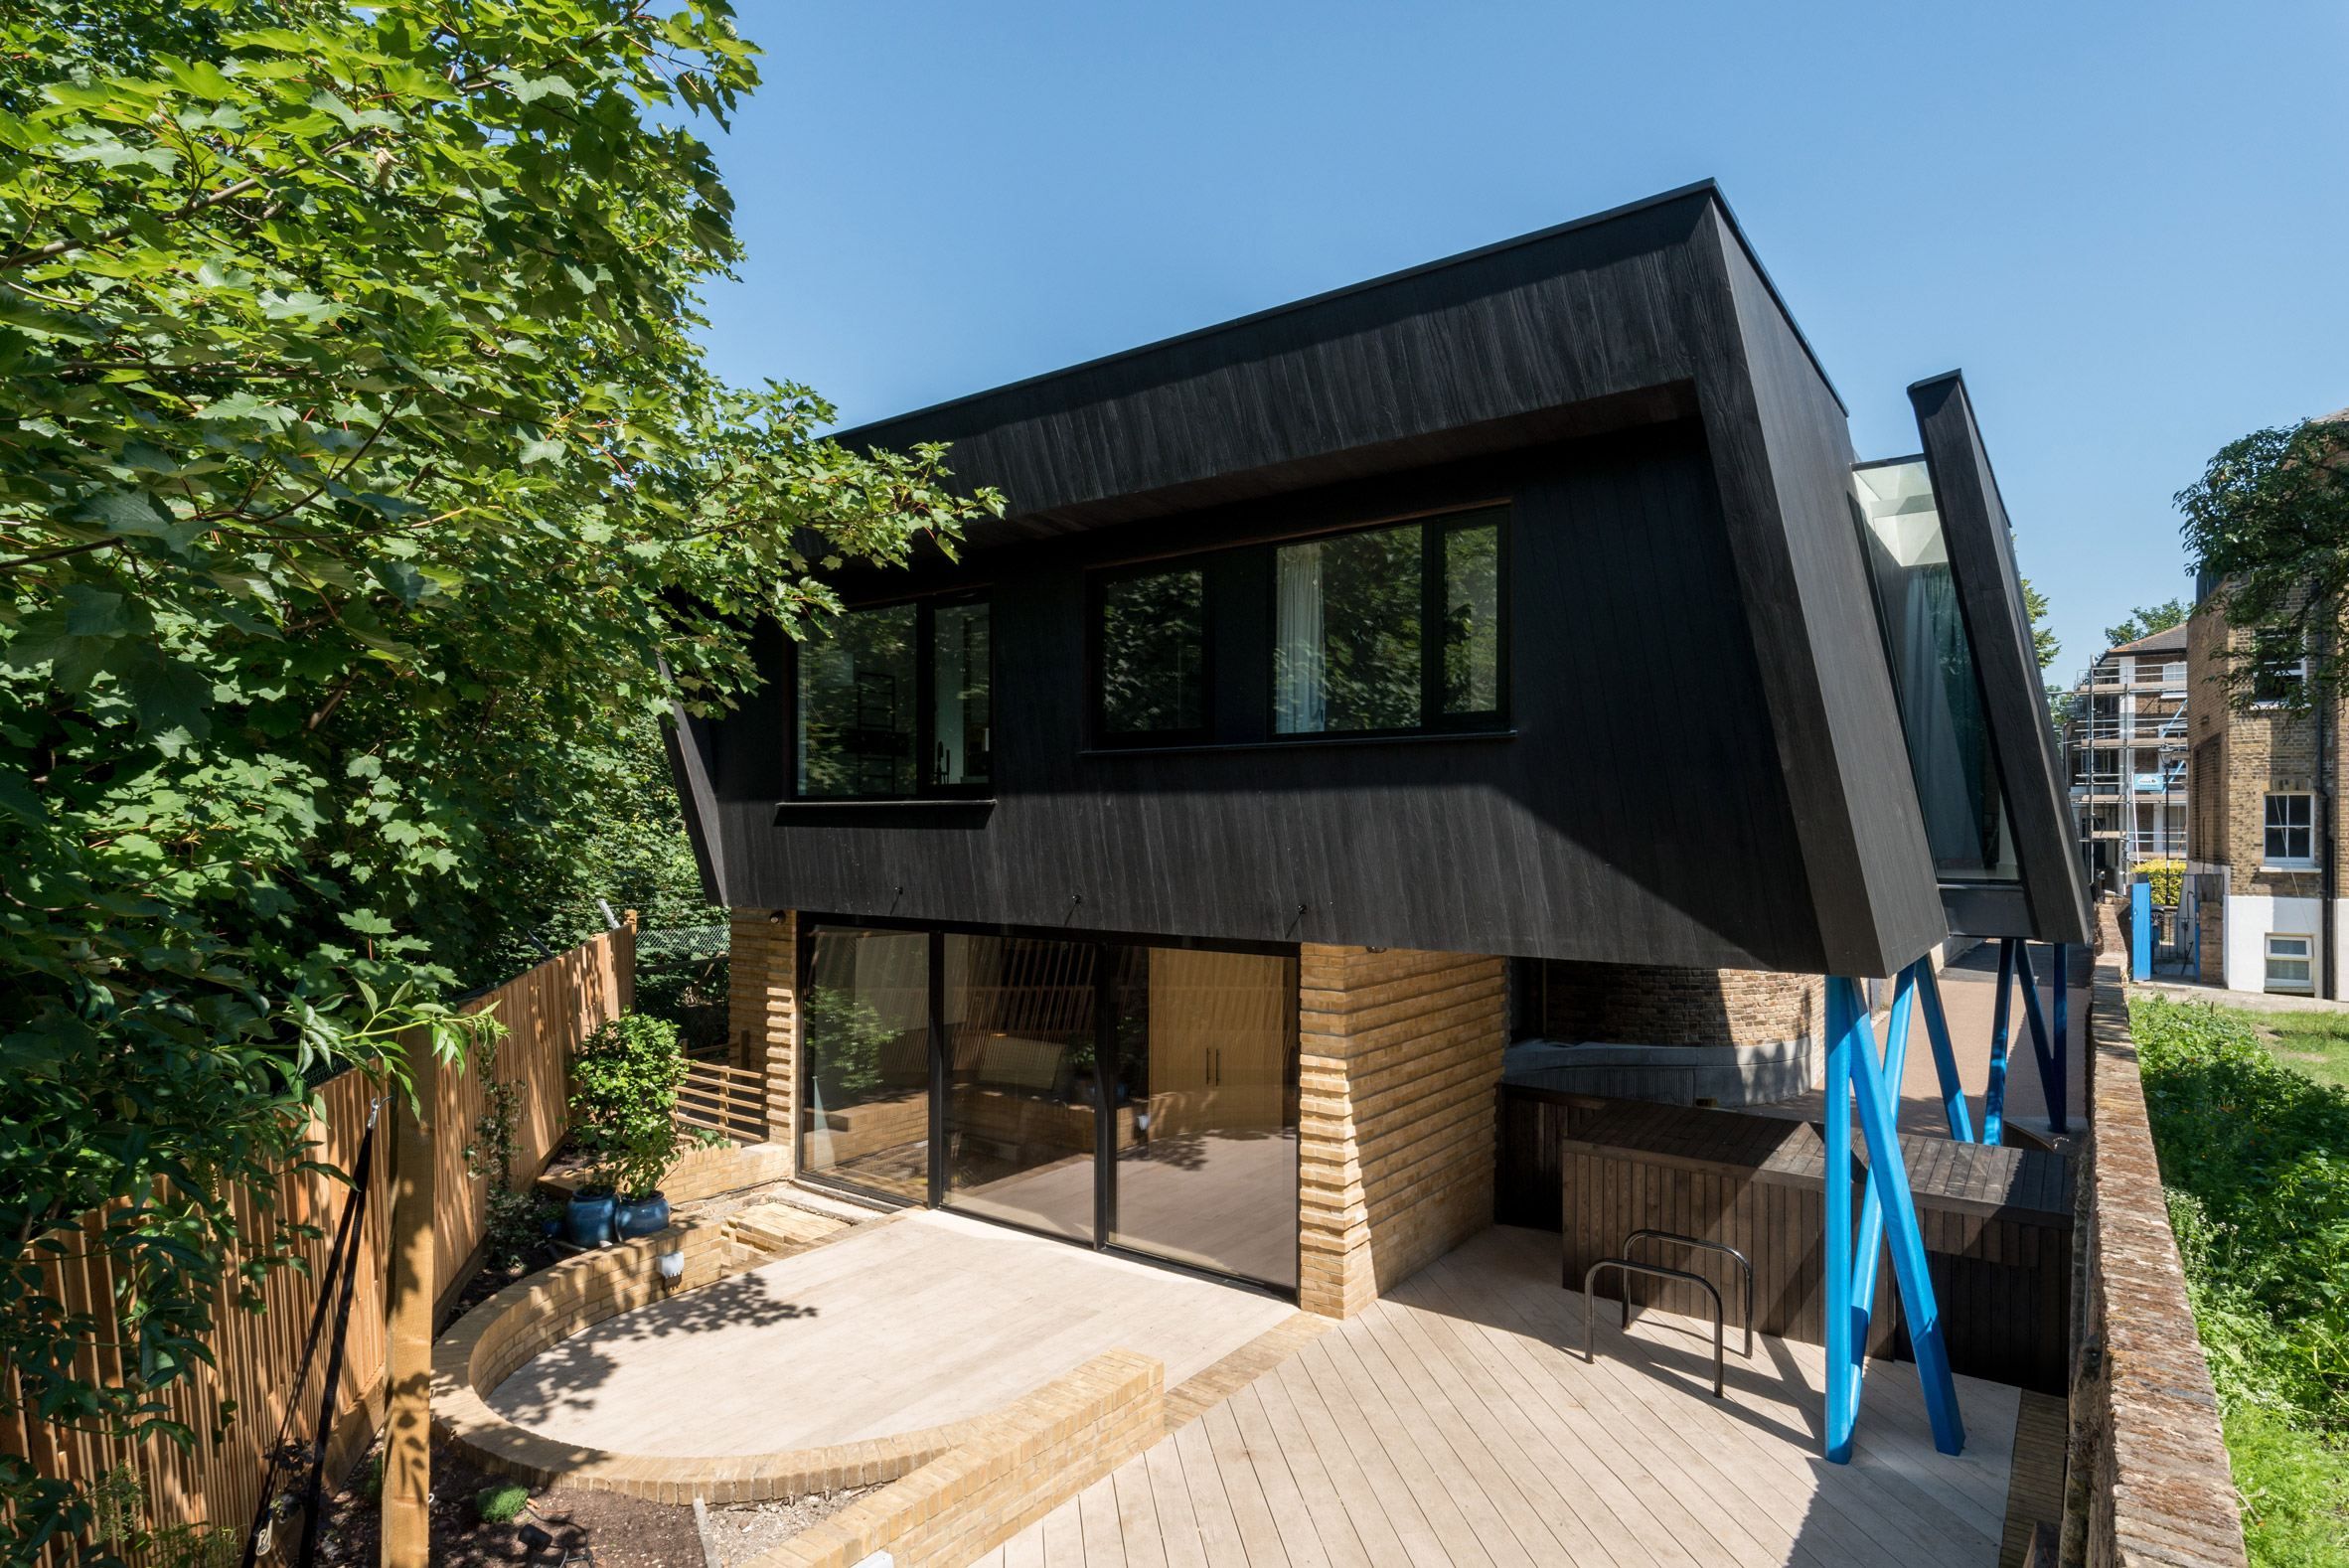 Черный дом на ножках: необычный дизайн создали в Лондоне
